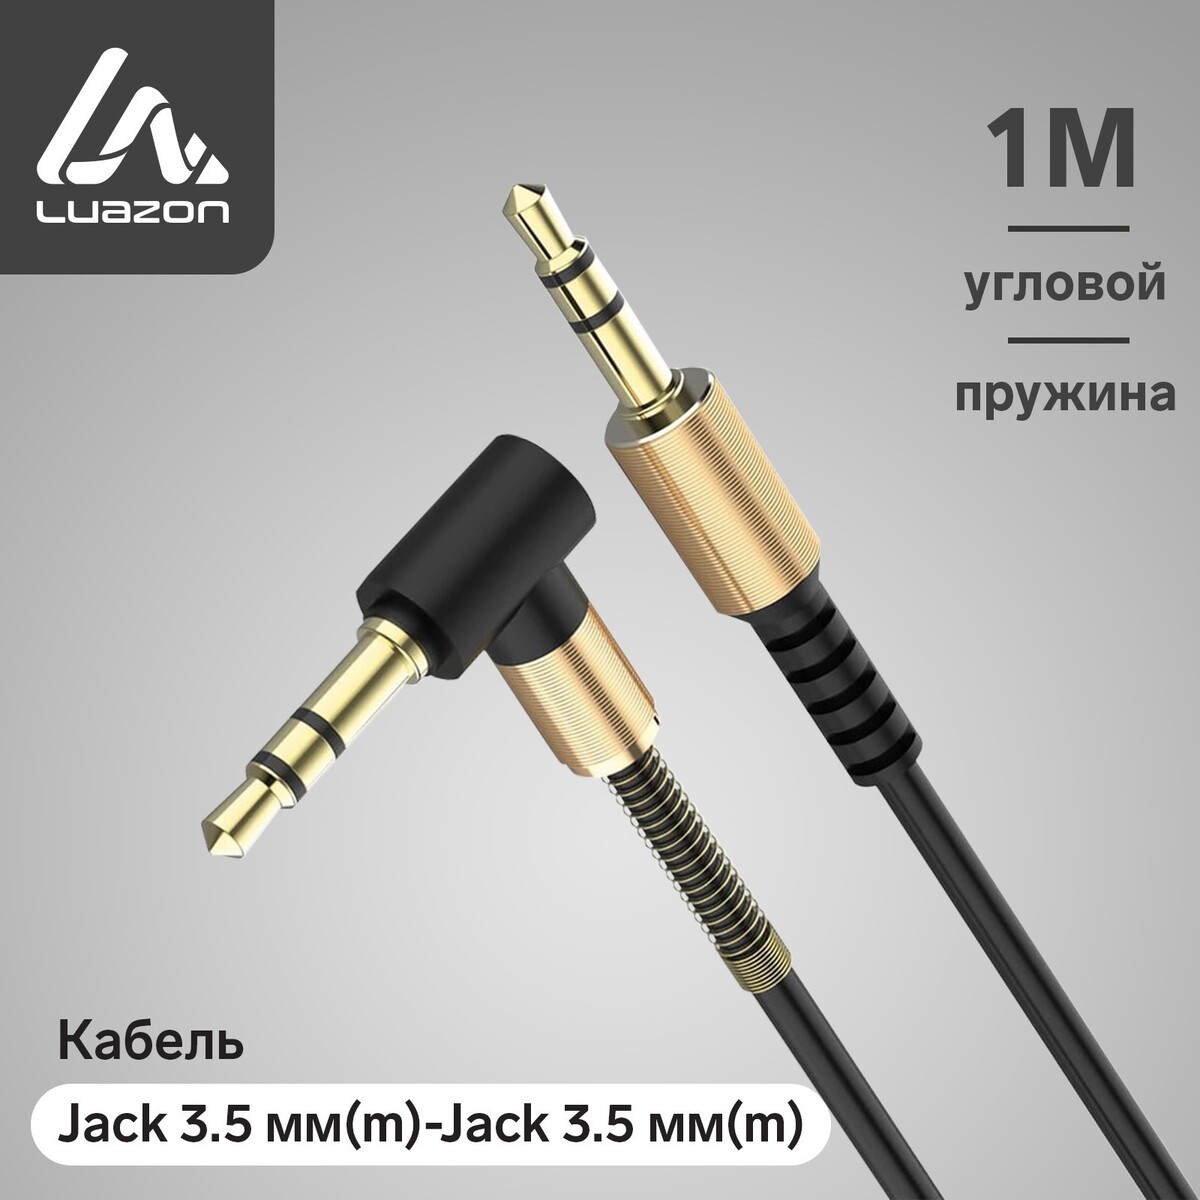 Кабель аудио aux luazon, jack 3.5 мм(m)-jack 3.5 мм(m), угловой, металл пружина, 1 м, черный кабель gembird 3 5 jack m 3 5 jack f 1 5m cca 423